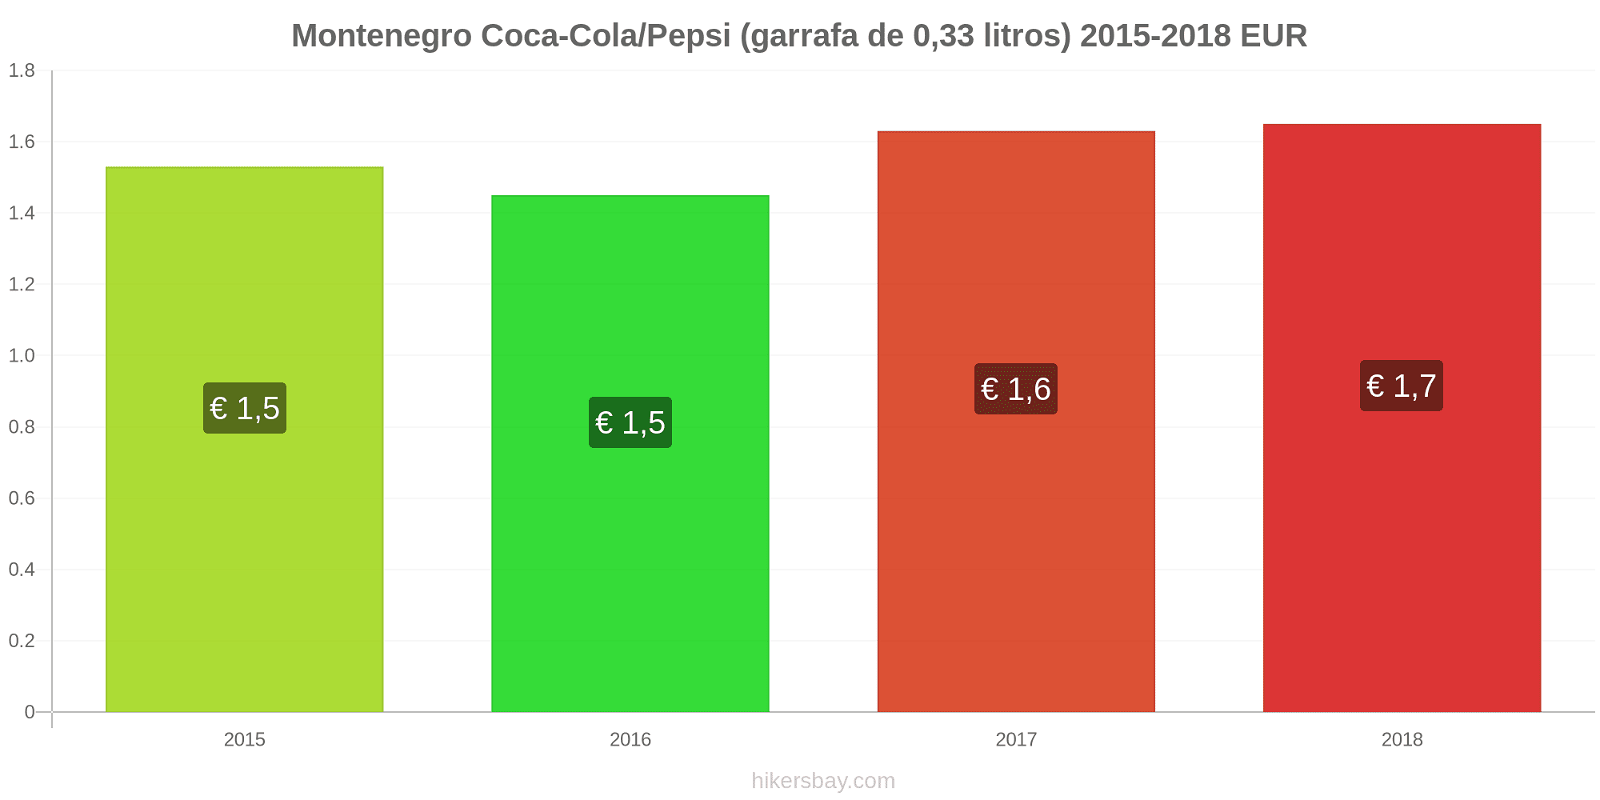 Montenegro mudanças de preços Coca-Cola/Pepsi (garrafa de 0.33 litros) hikersbay.com